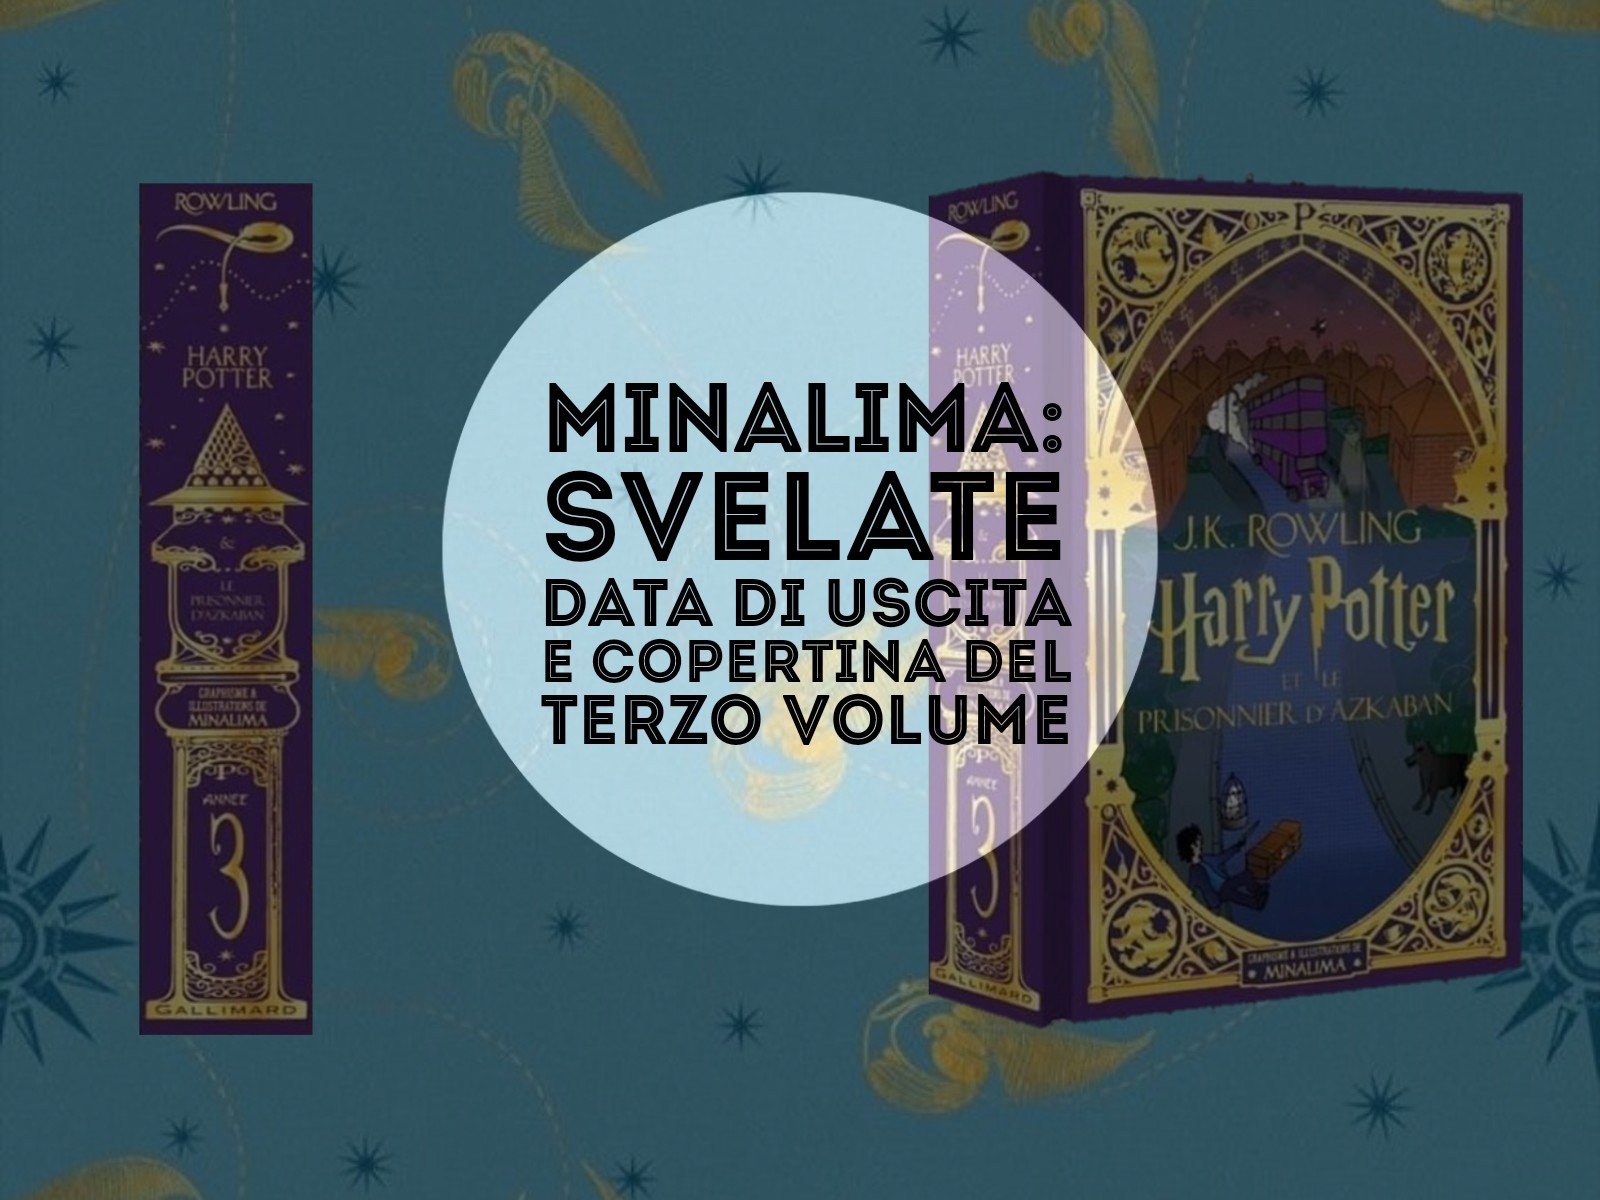 MinaLima: svelate data di uscita e copertina del terzo volume